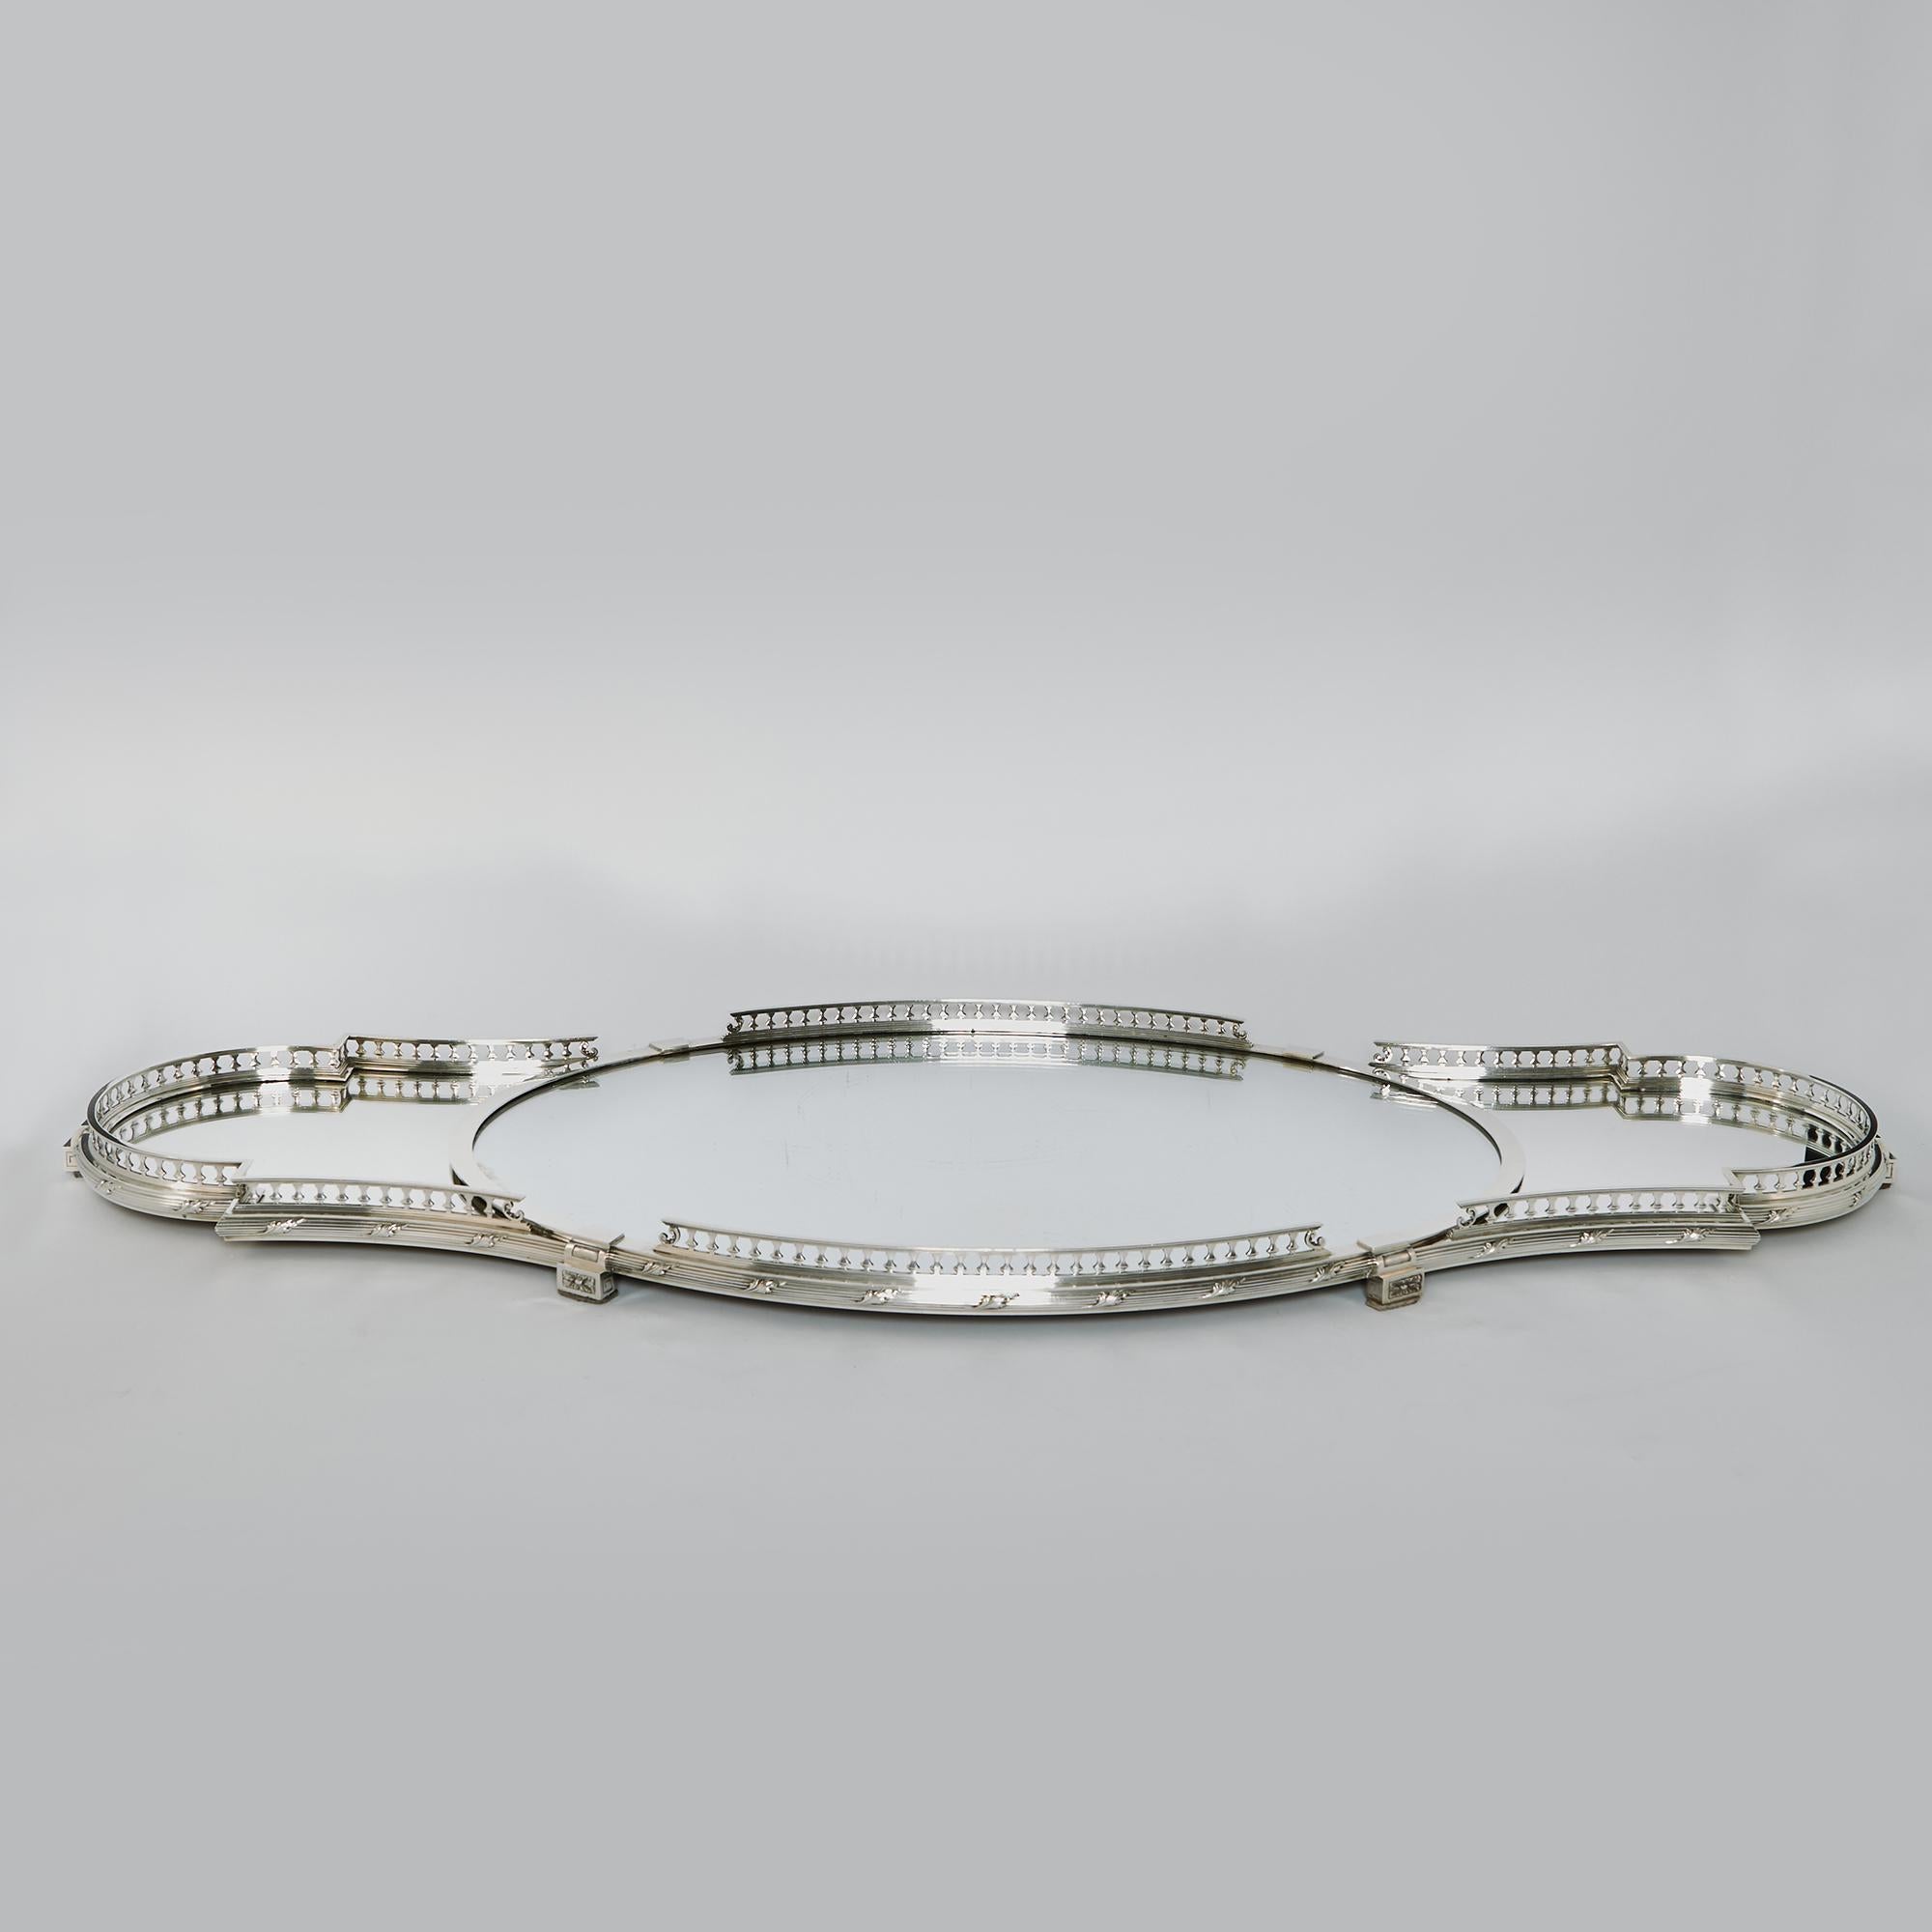 Wunderschönes dreiteiliges Spiegelplateau aus französischem Silber des 1. Standards (950/1000). Das große ovale Plateau in der Mitte und die beiden geformten Seitenteile weisen erhöhte Galerien mit Balusterstützen auf, unter denen sich ein Band mit